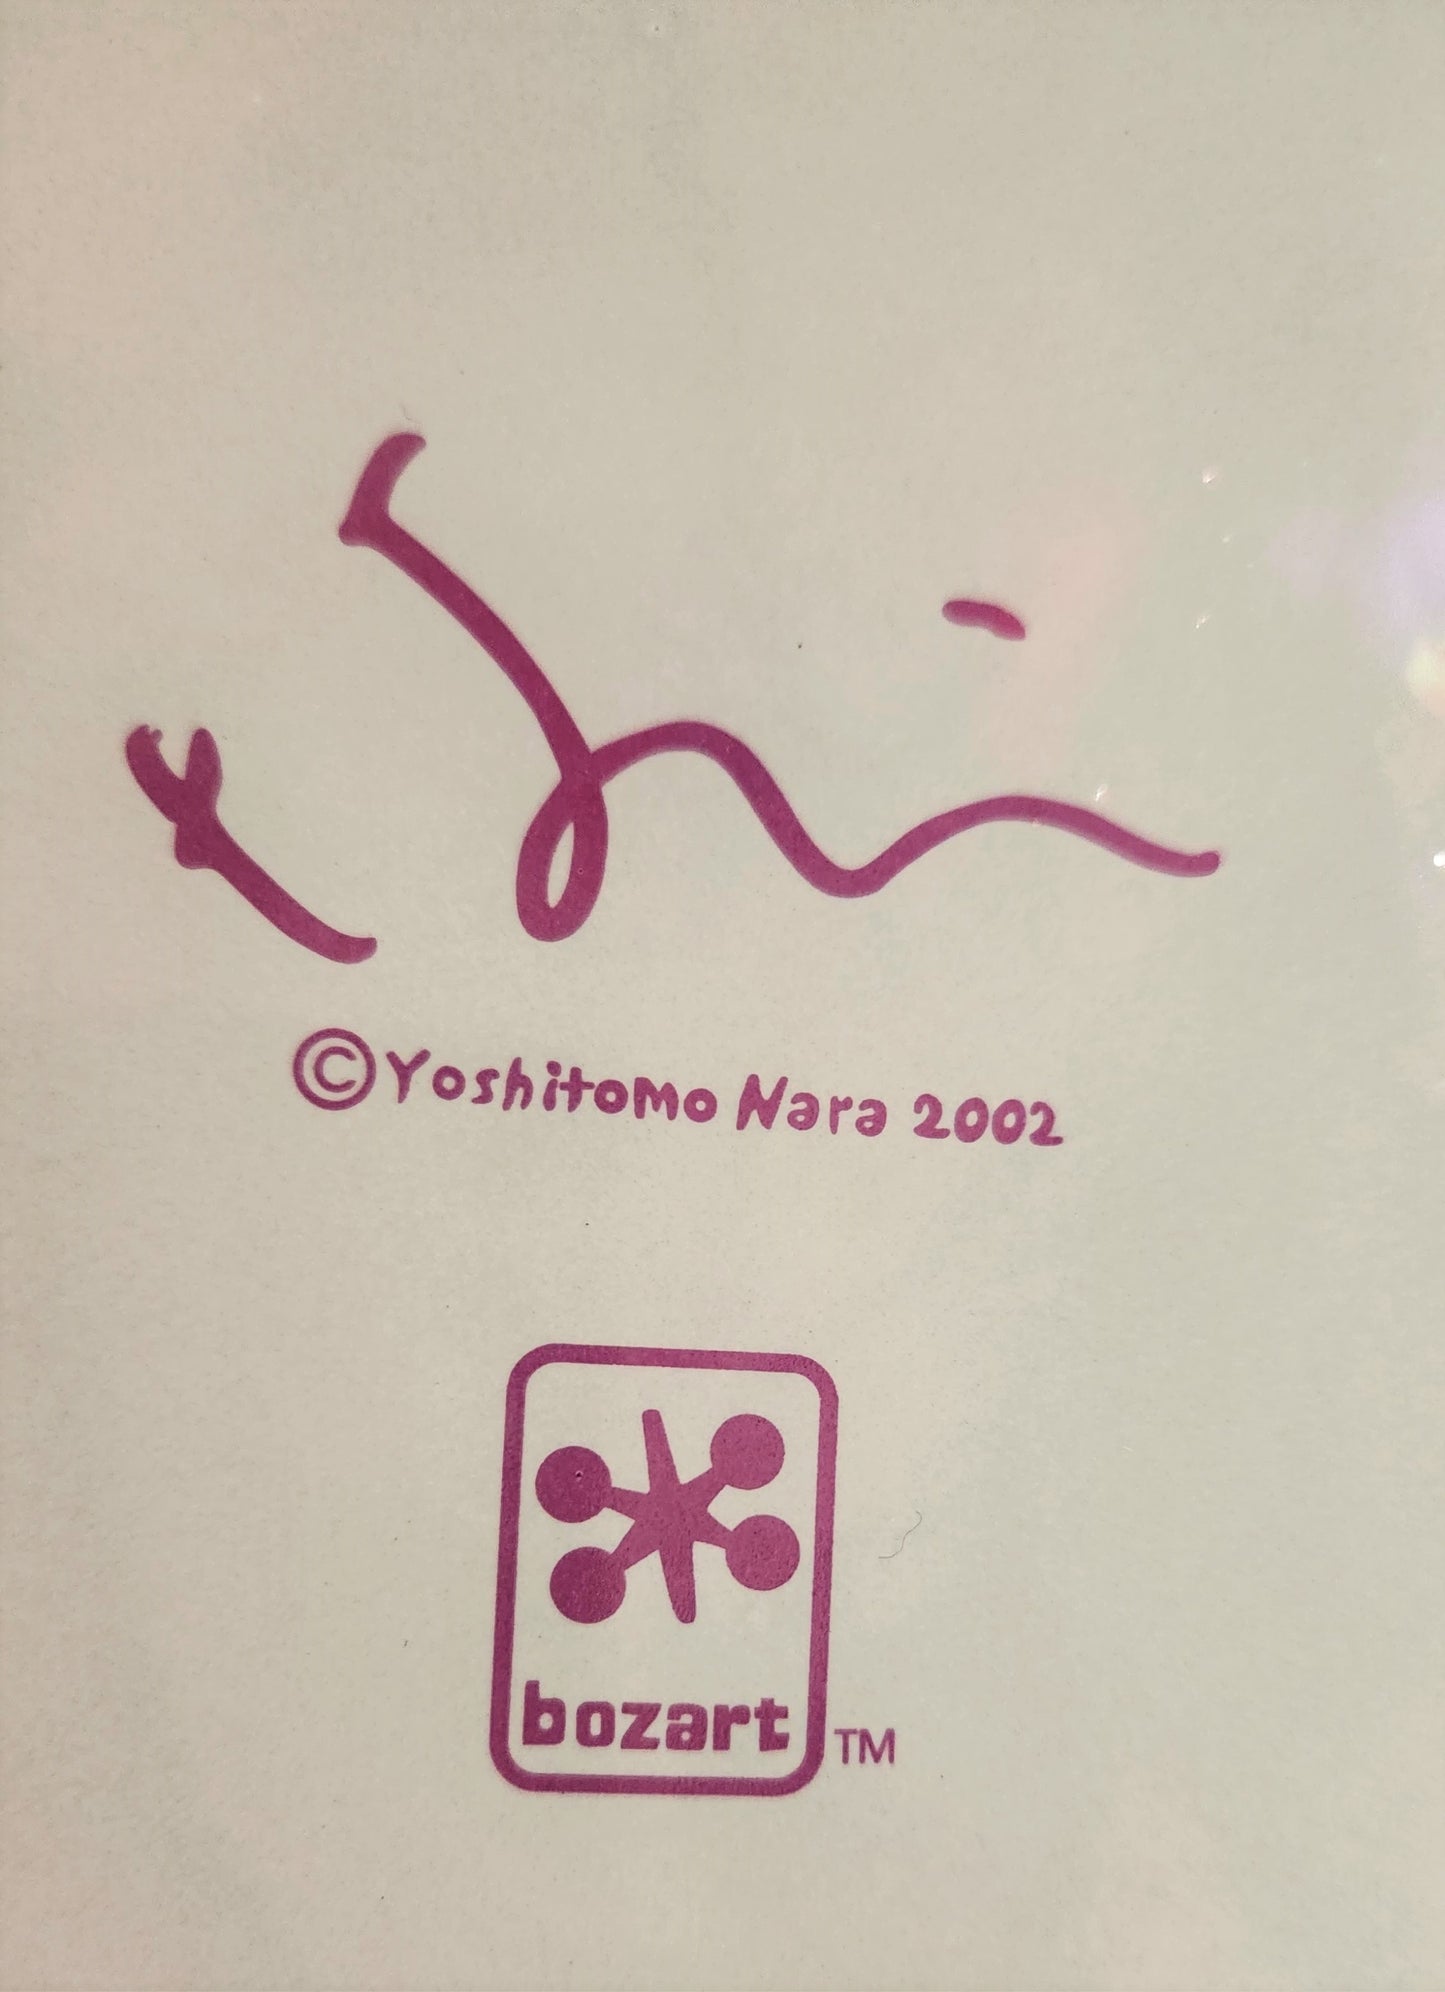 Yoshitomo Nara: “Too Young to Die” Ashtray, 2002